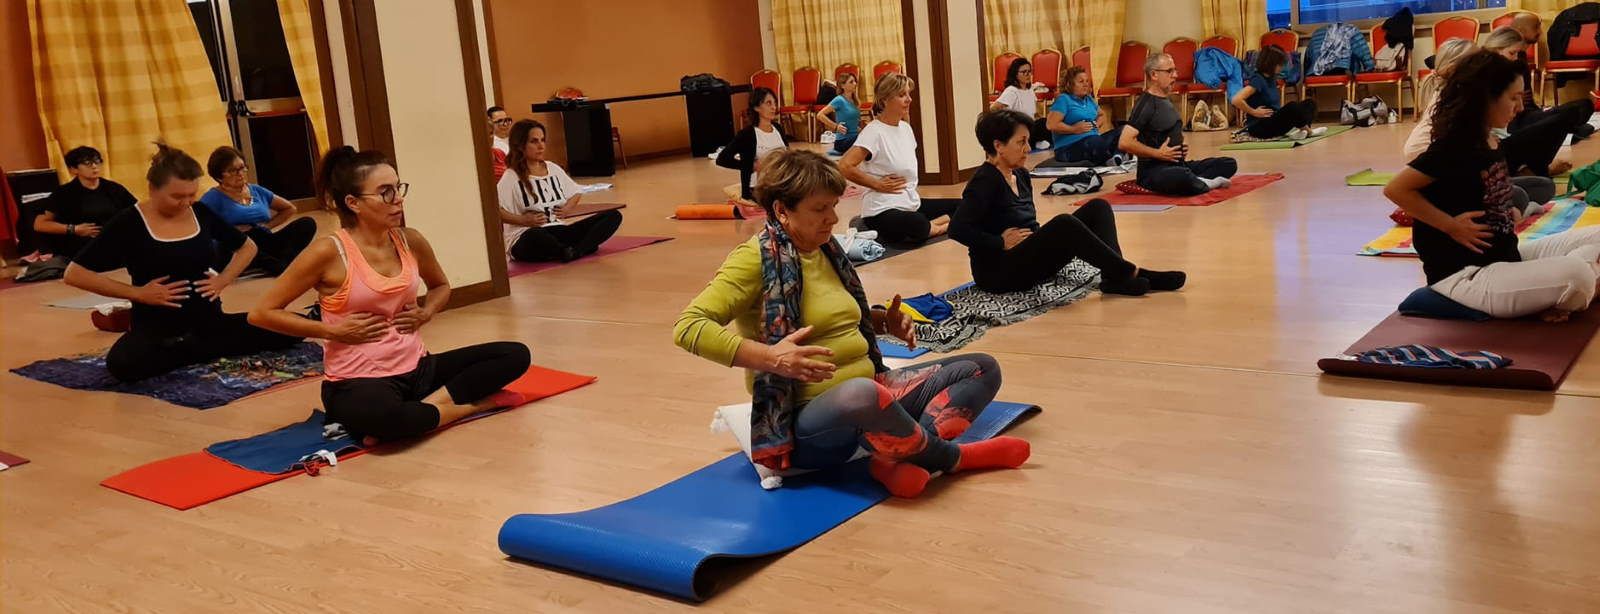 Riprendono i corsi di yoga olistico a San Benedetto e Grottammare